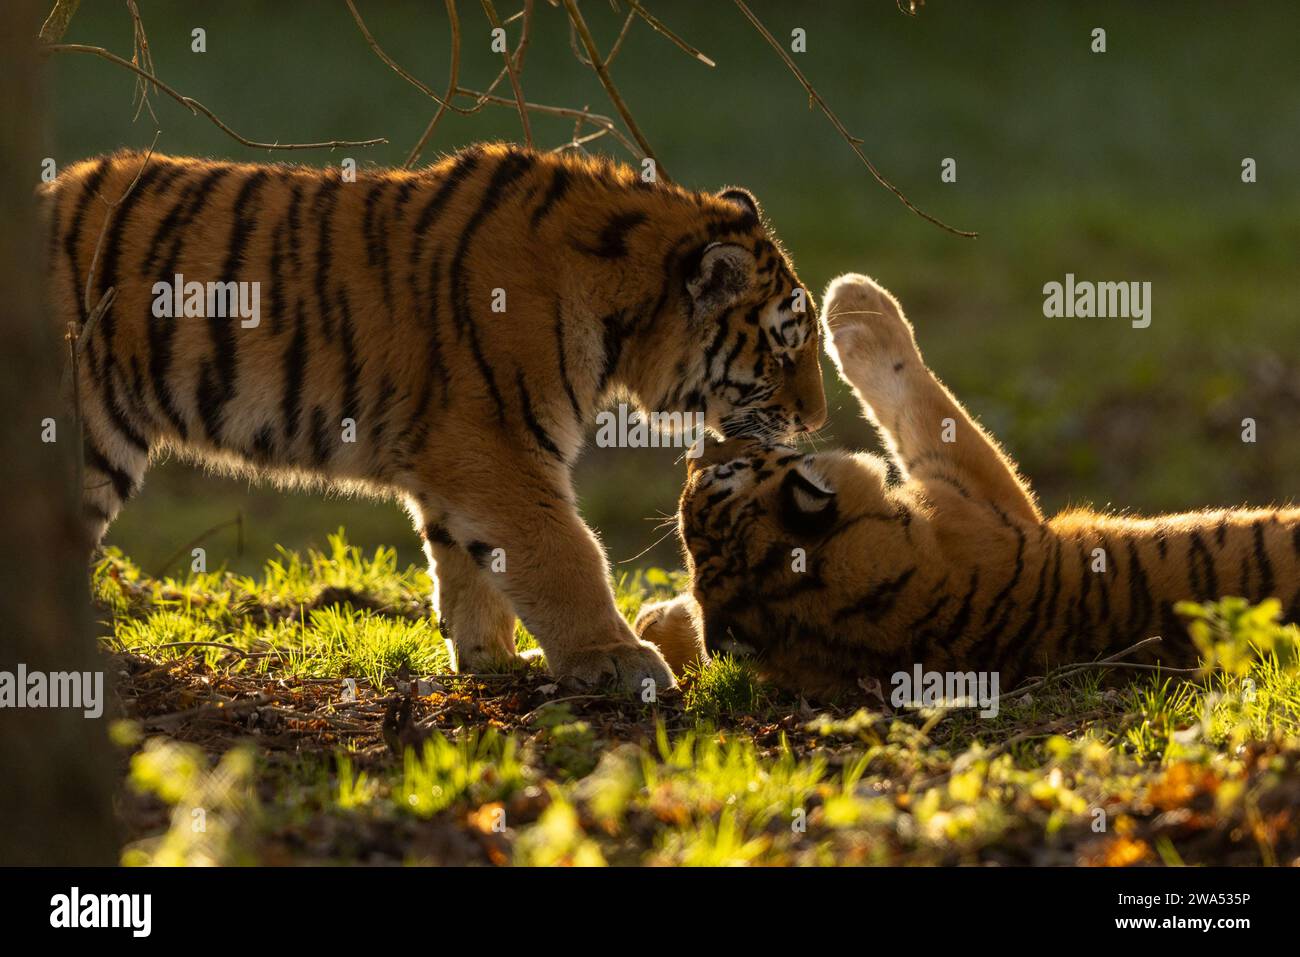 Tigerjungen am Neujahrstag Großbritannien LIEBENSWERTE Bilder von zwei sibirischen Tigerjungen, die sich mit Zuneigung spielen und duschen, wurden am Neujahrstag aufgenommen. Stockfoto